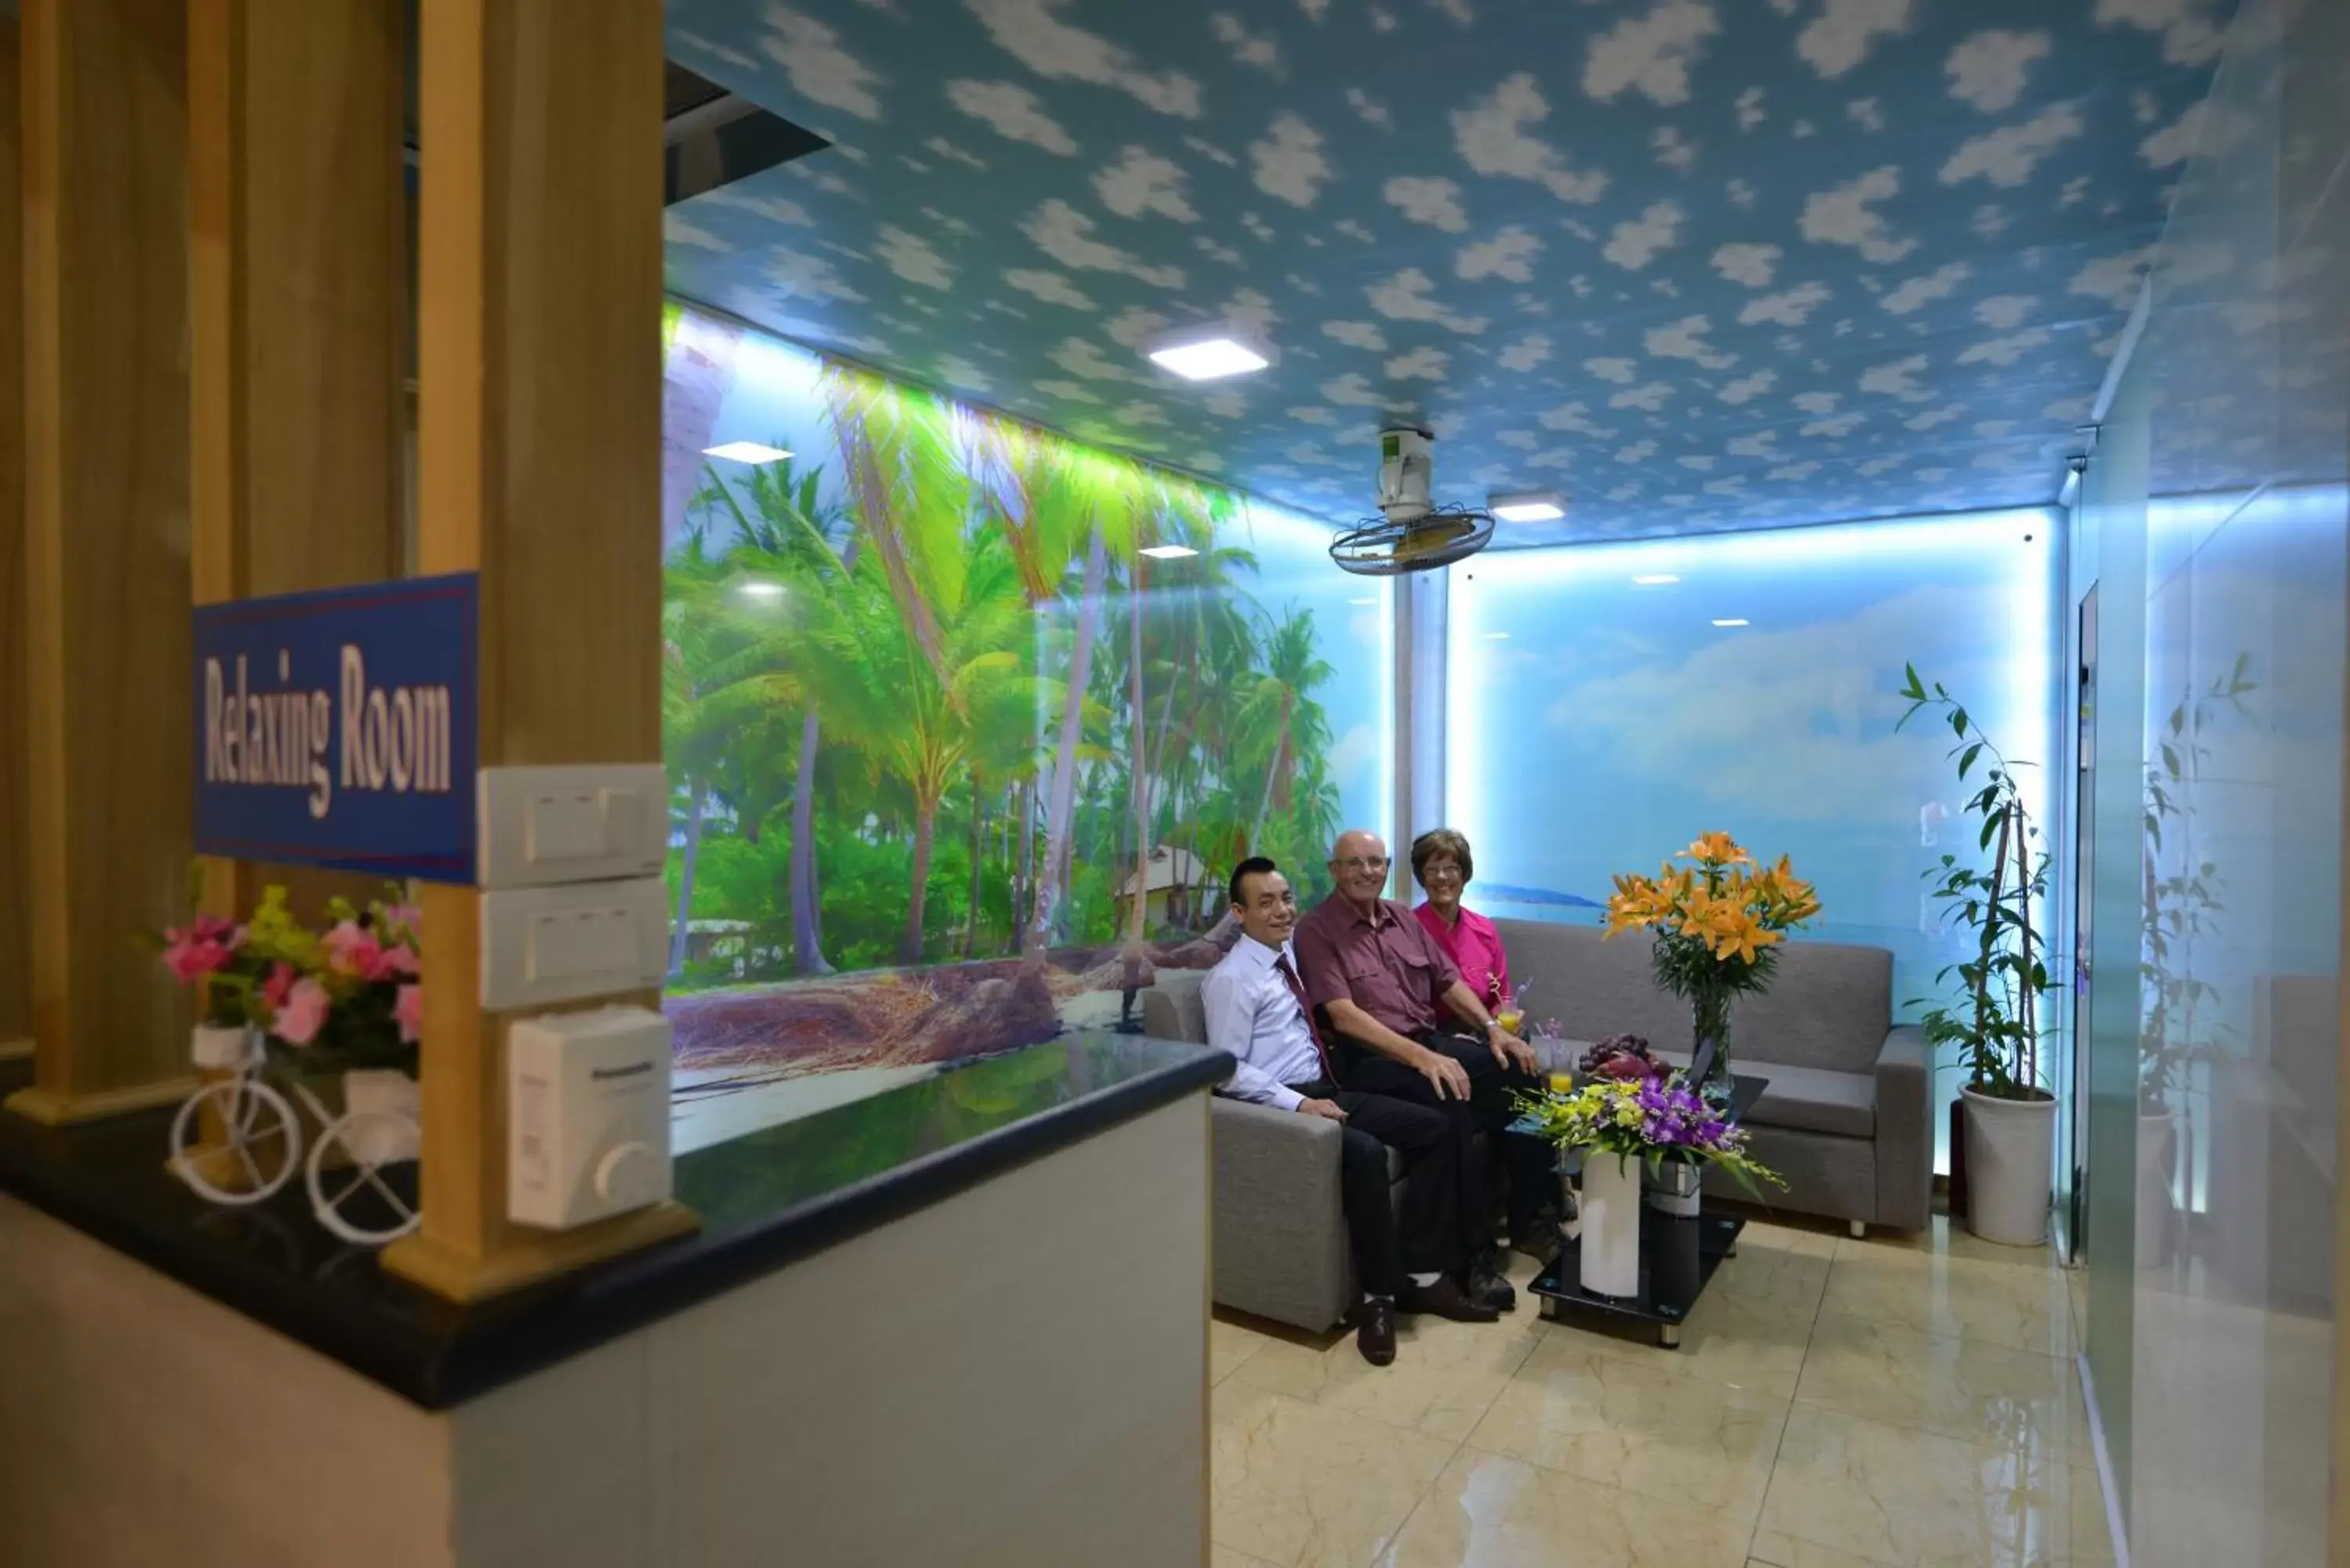 Lobby or reception in Blue Hanoi Inn Hotel